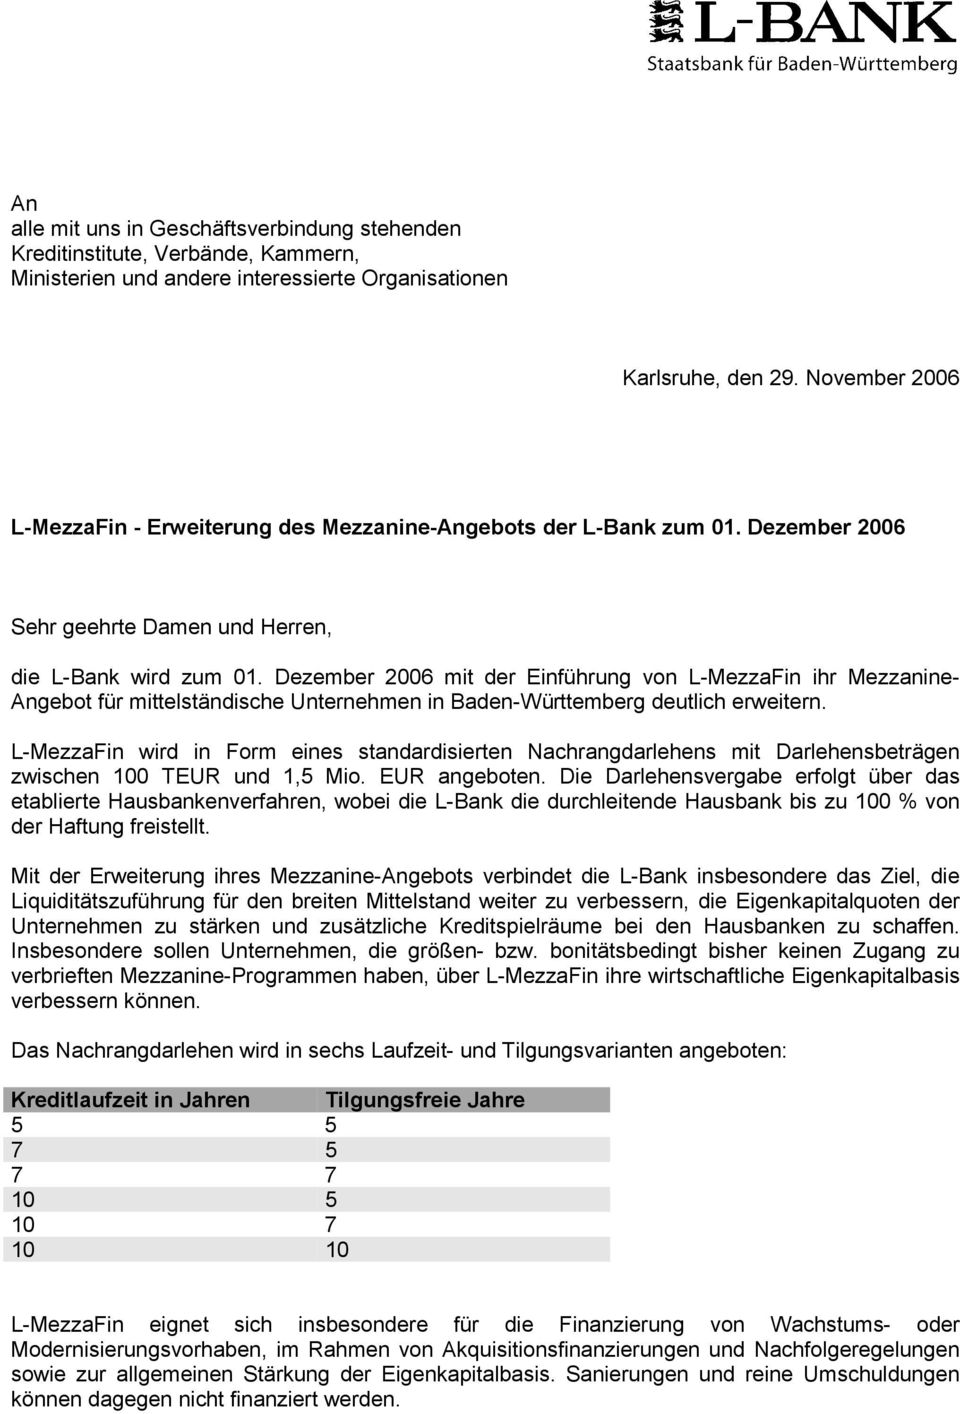 Dezember 2006 mit der Einführung von L-MezzaFin ihr Mezzanine- Angebot für mittelständische Unternehmen in Baden-Württemberg deutlich erweitern.